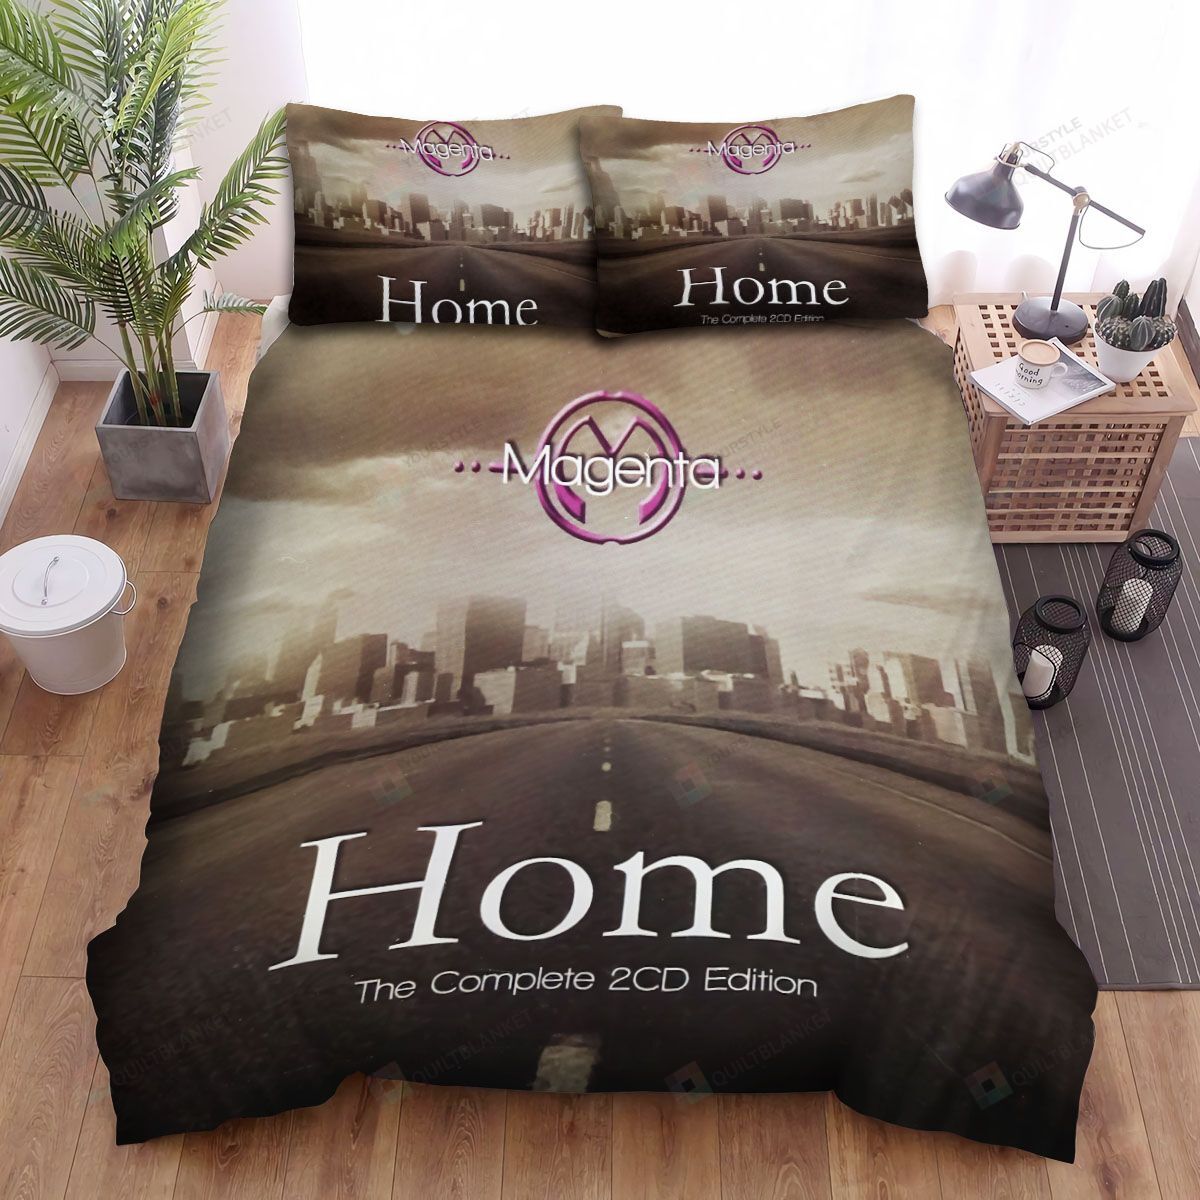 Magenta Home Bed Sheets Spread Comforter Duvet Cover Bedding Sets